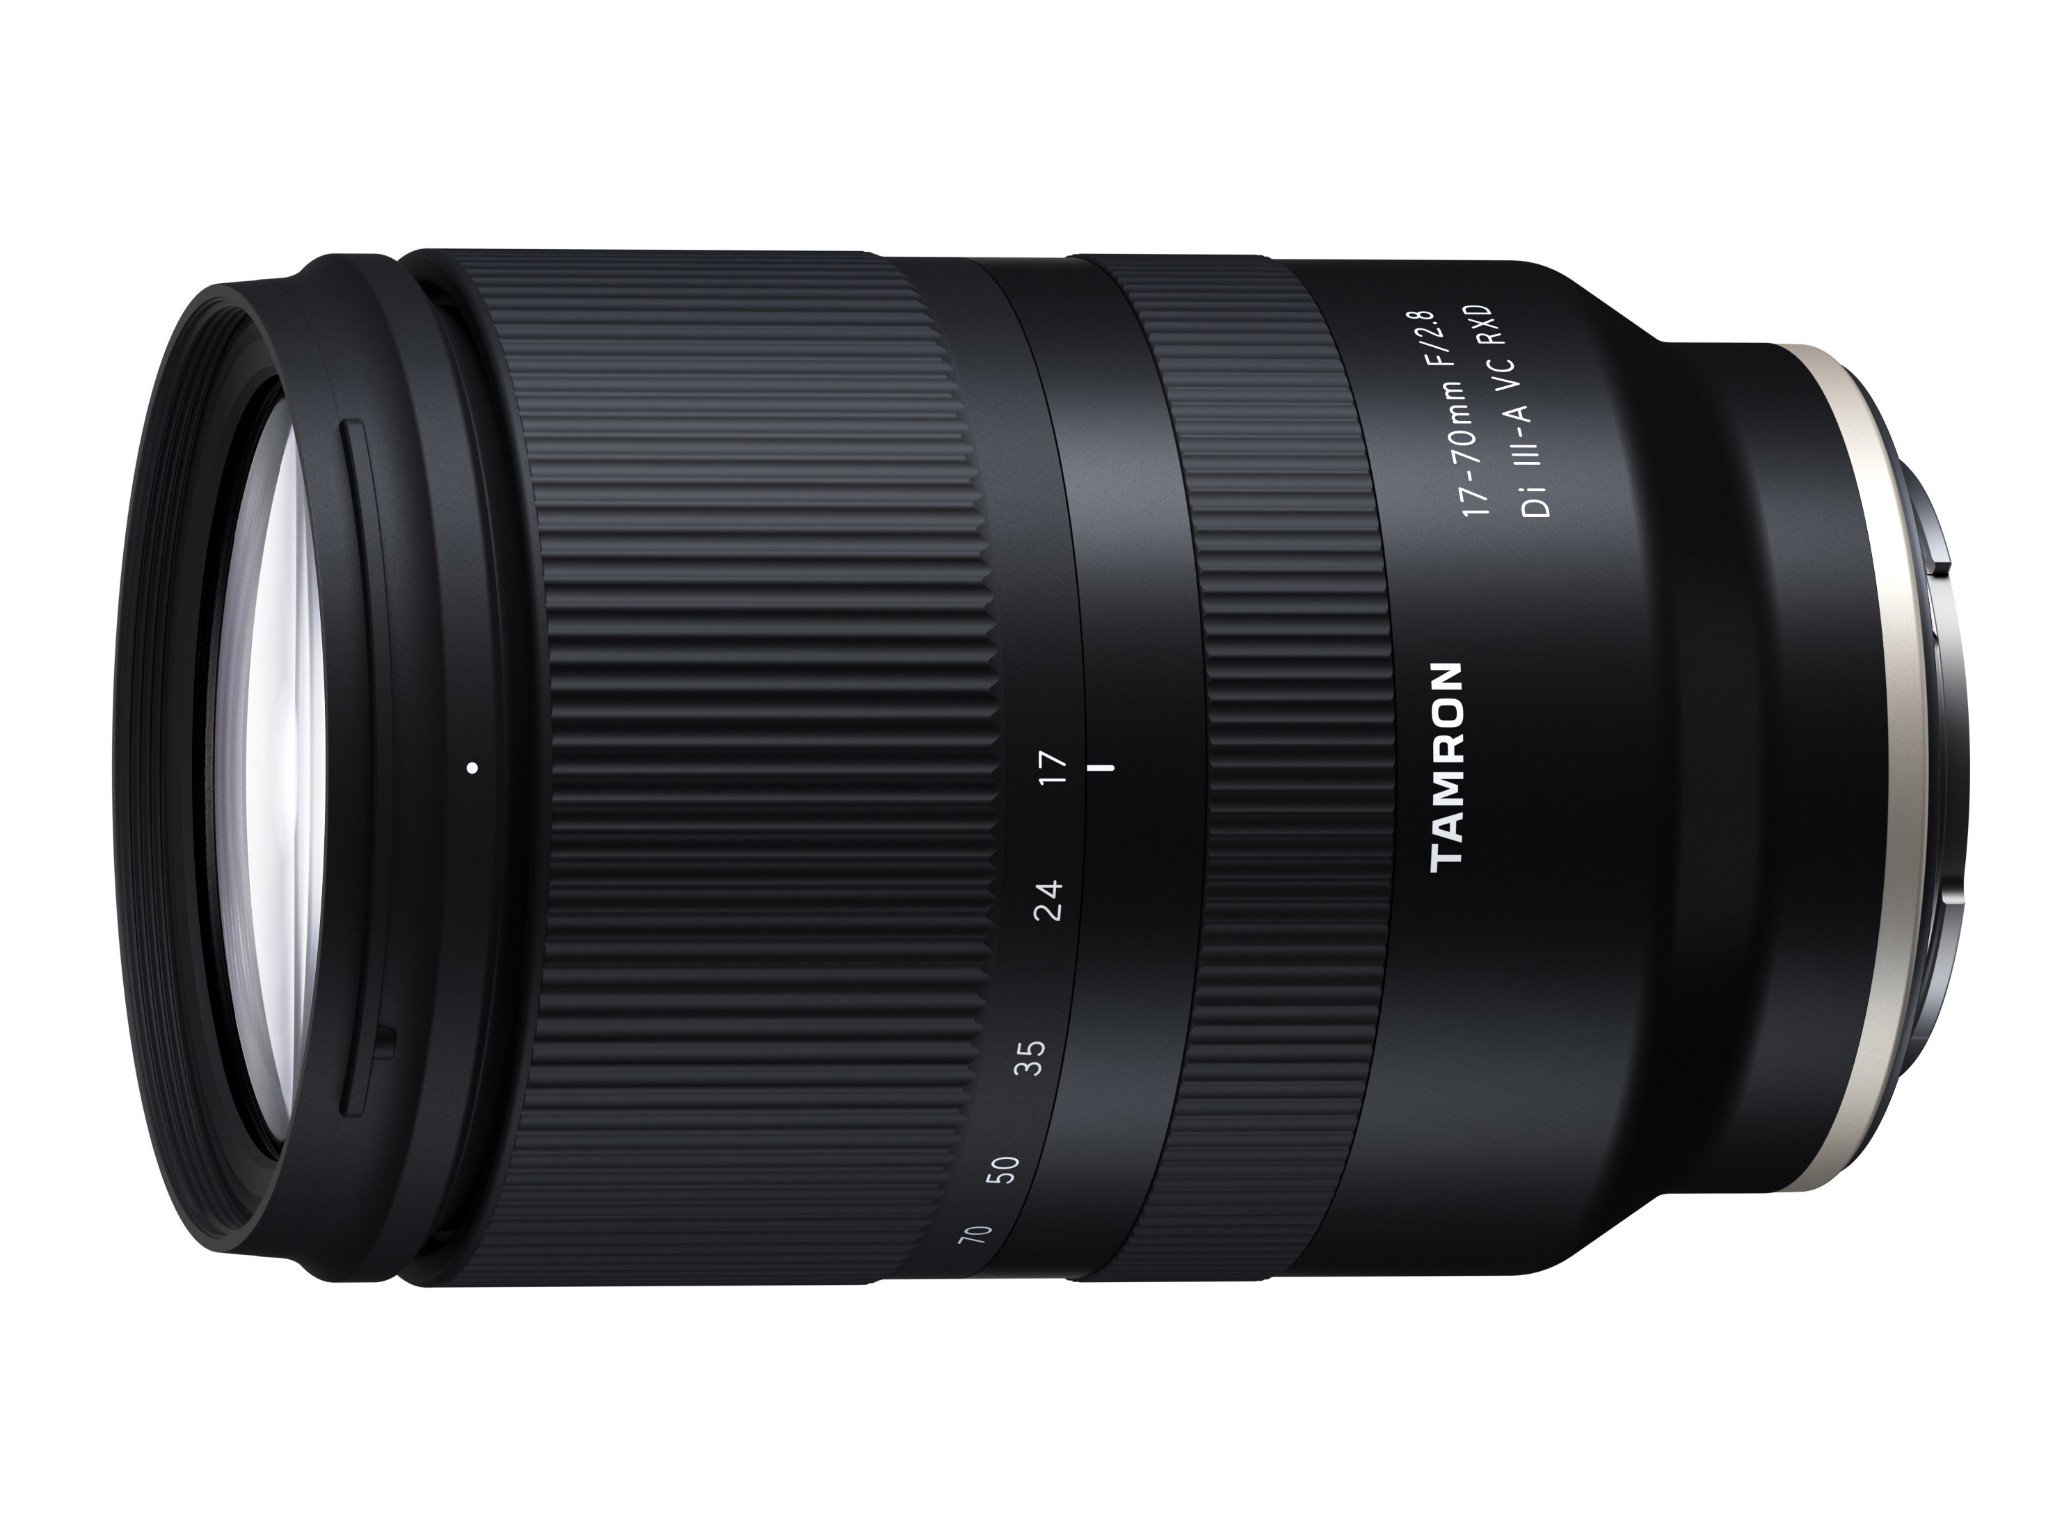 Tamron ra mắt ống kính 17-70mm F2.8 dành cho các máy ảnh Sony APS-C